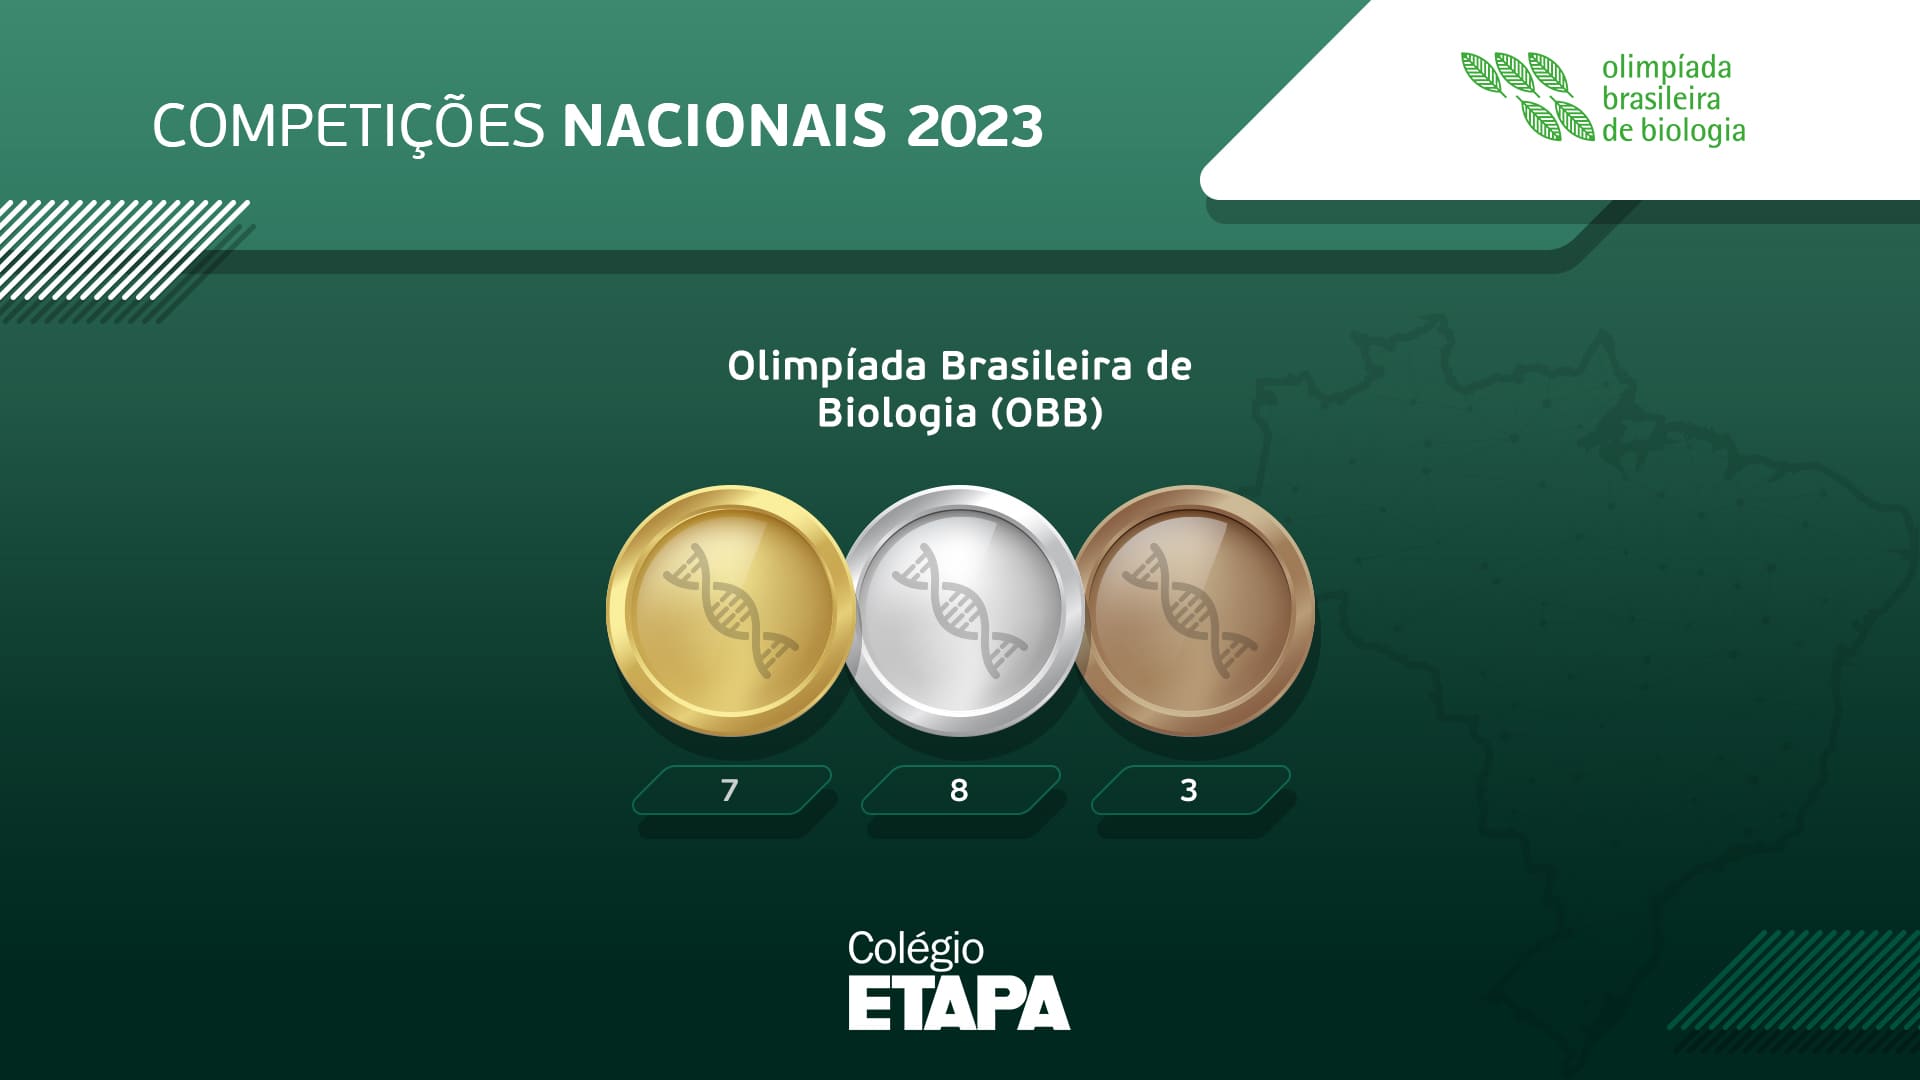 Alunos do Colégio Etapa alcançaram resultados importantes na OBB 2023 e foram condecorados com medalhas.